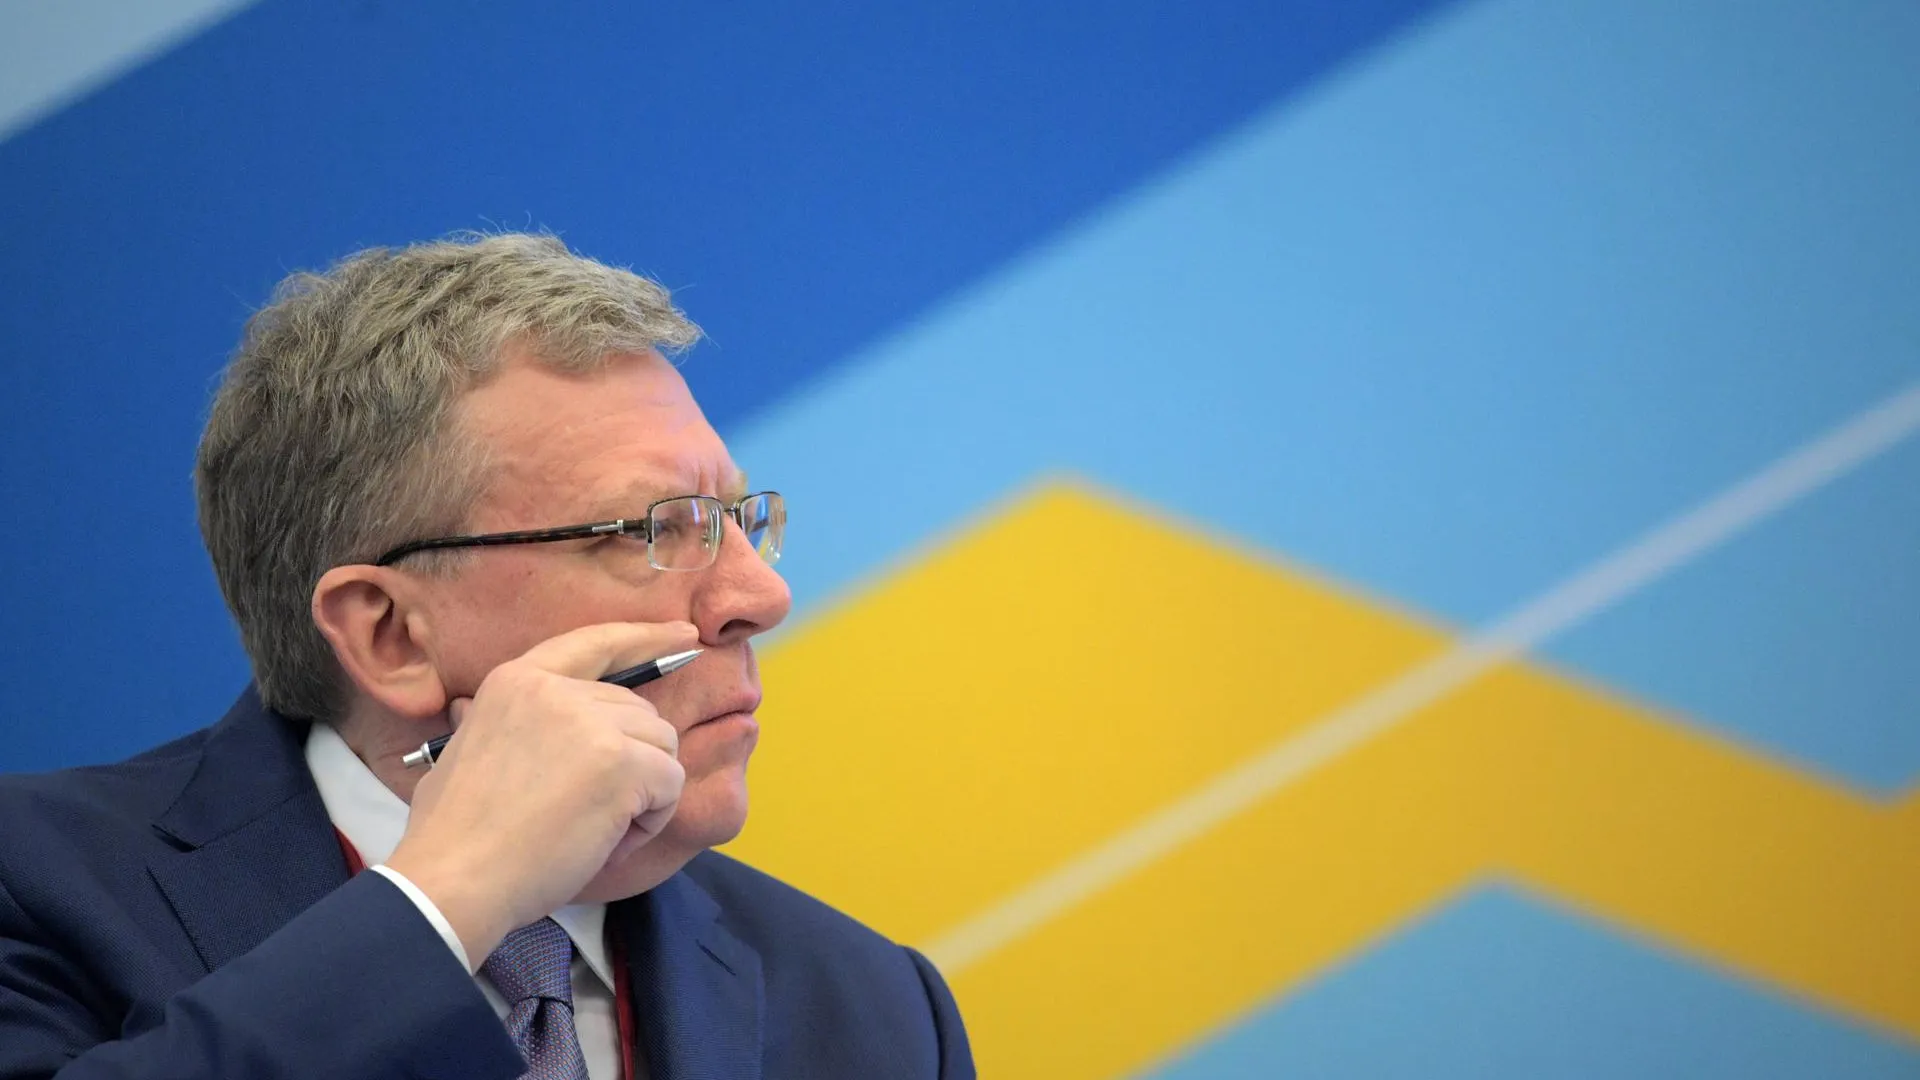 Кудрин принял предложение стать советником по корпоративному развитию «Яндекса»